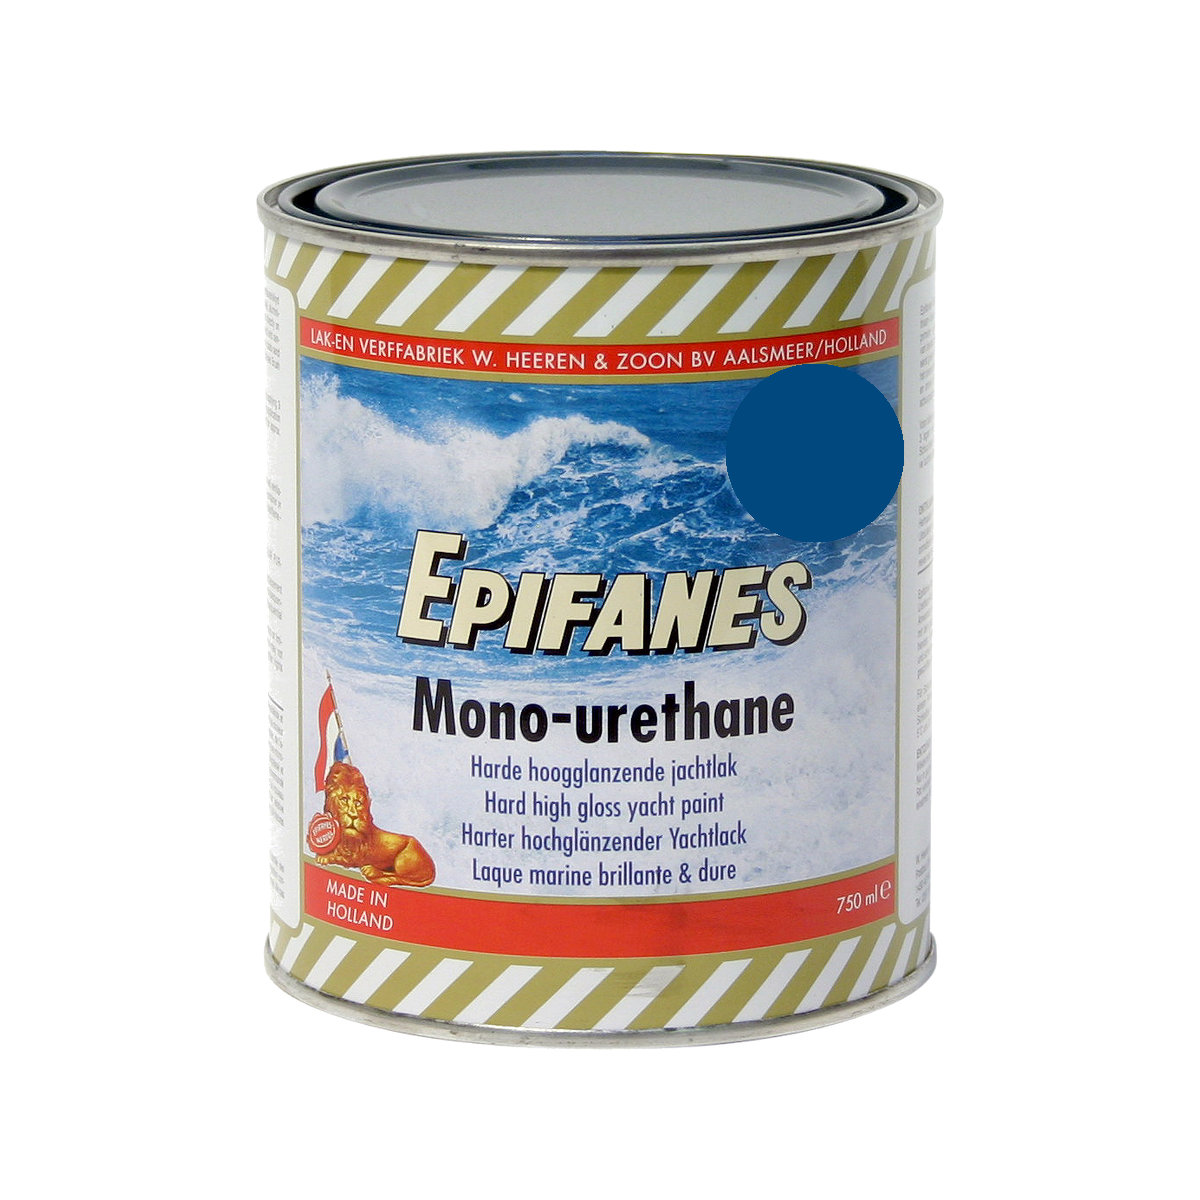 Epifanes mono-urethane jachtlak - middenblauww 3107, 750ml